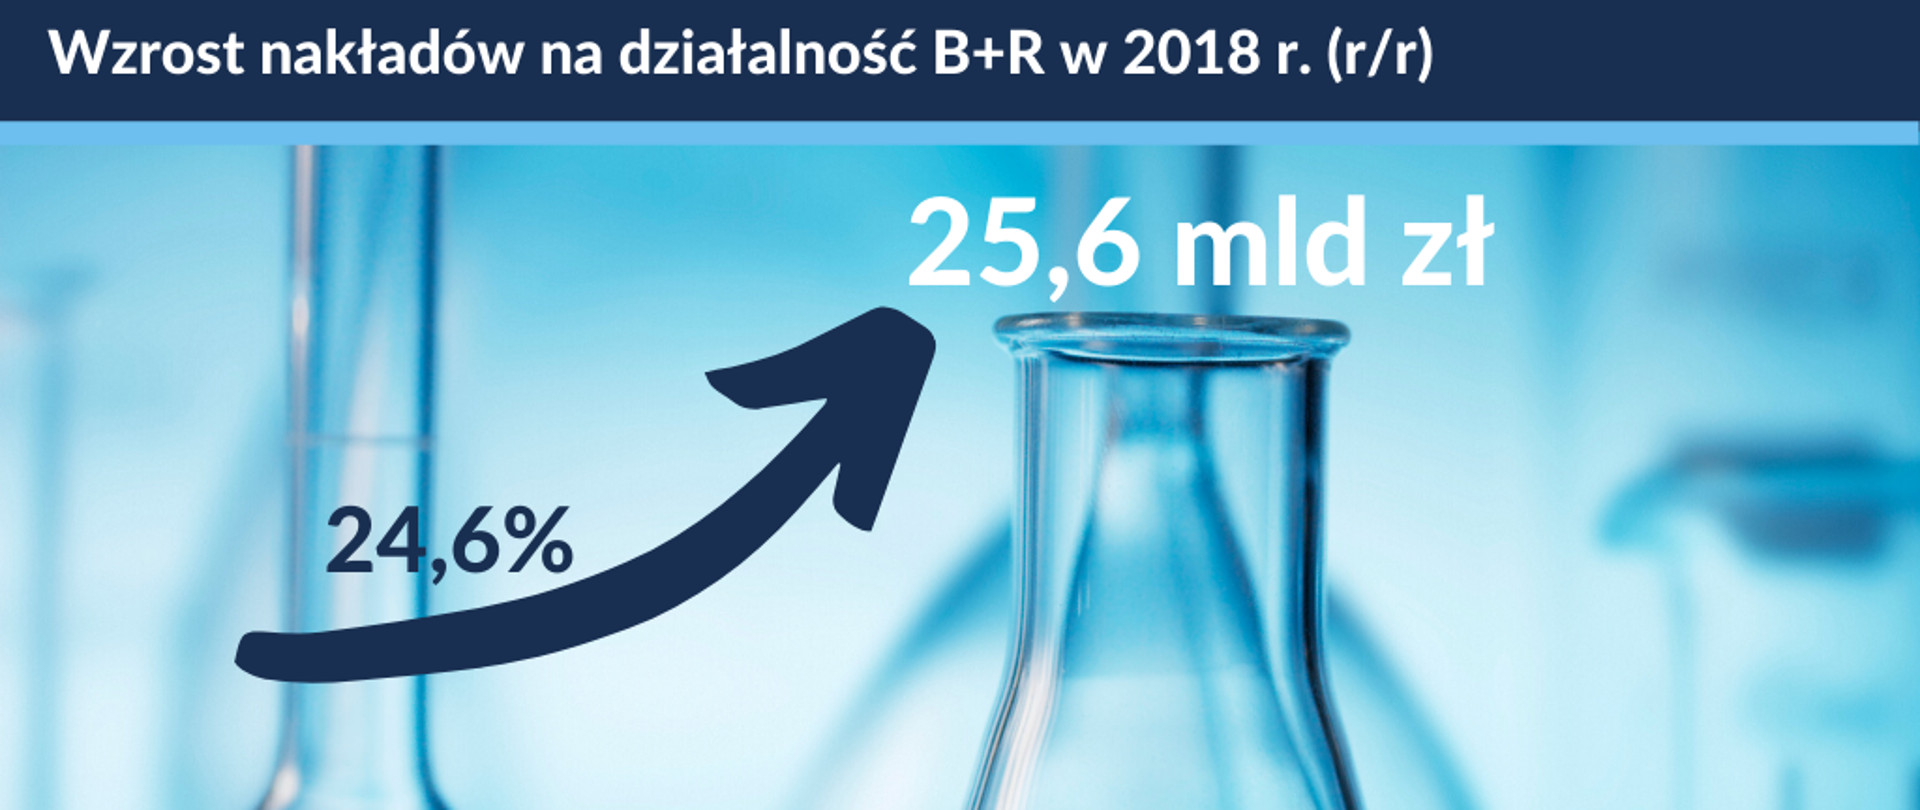 napis na grafice wzrost nakładów na działalność B+R w 2018 r. (r/r): 24,6 proc do 25,6 mld zł, w tle grafiki menzurki